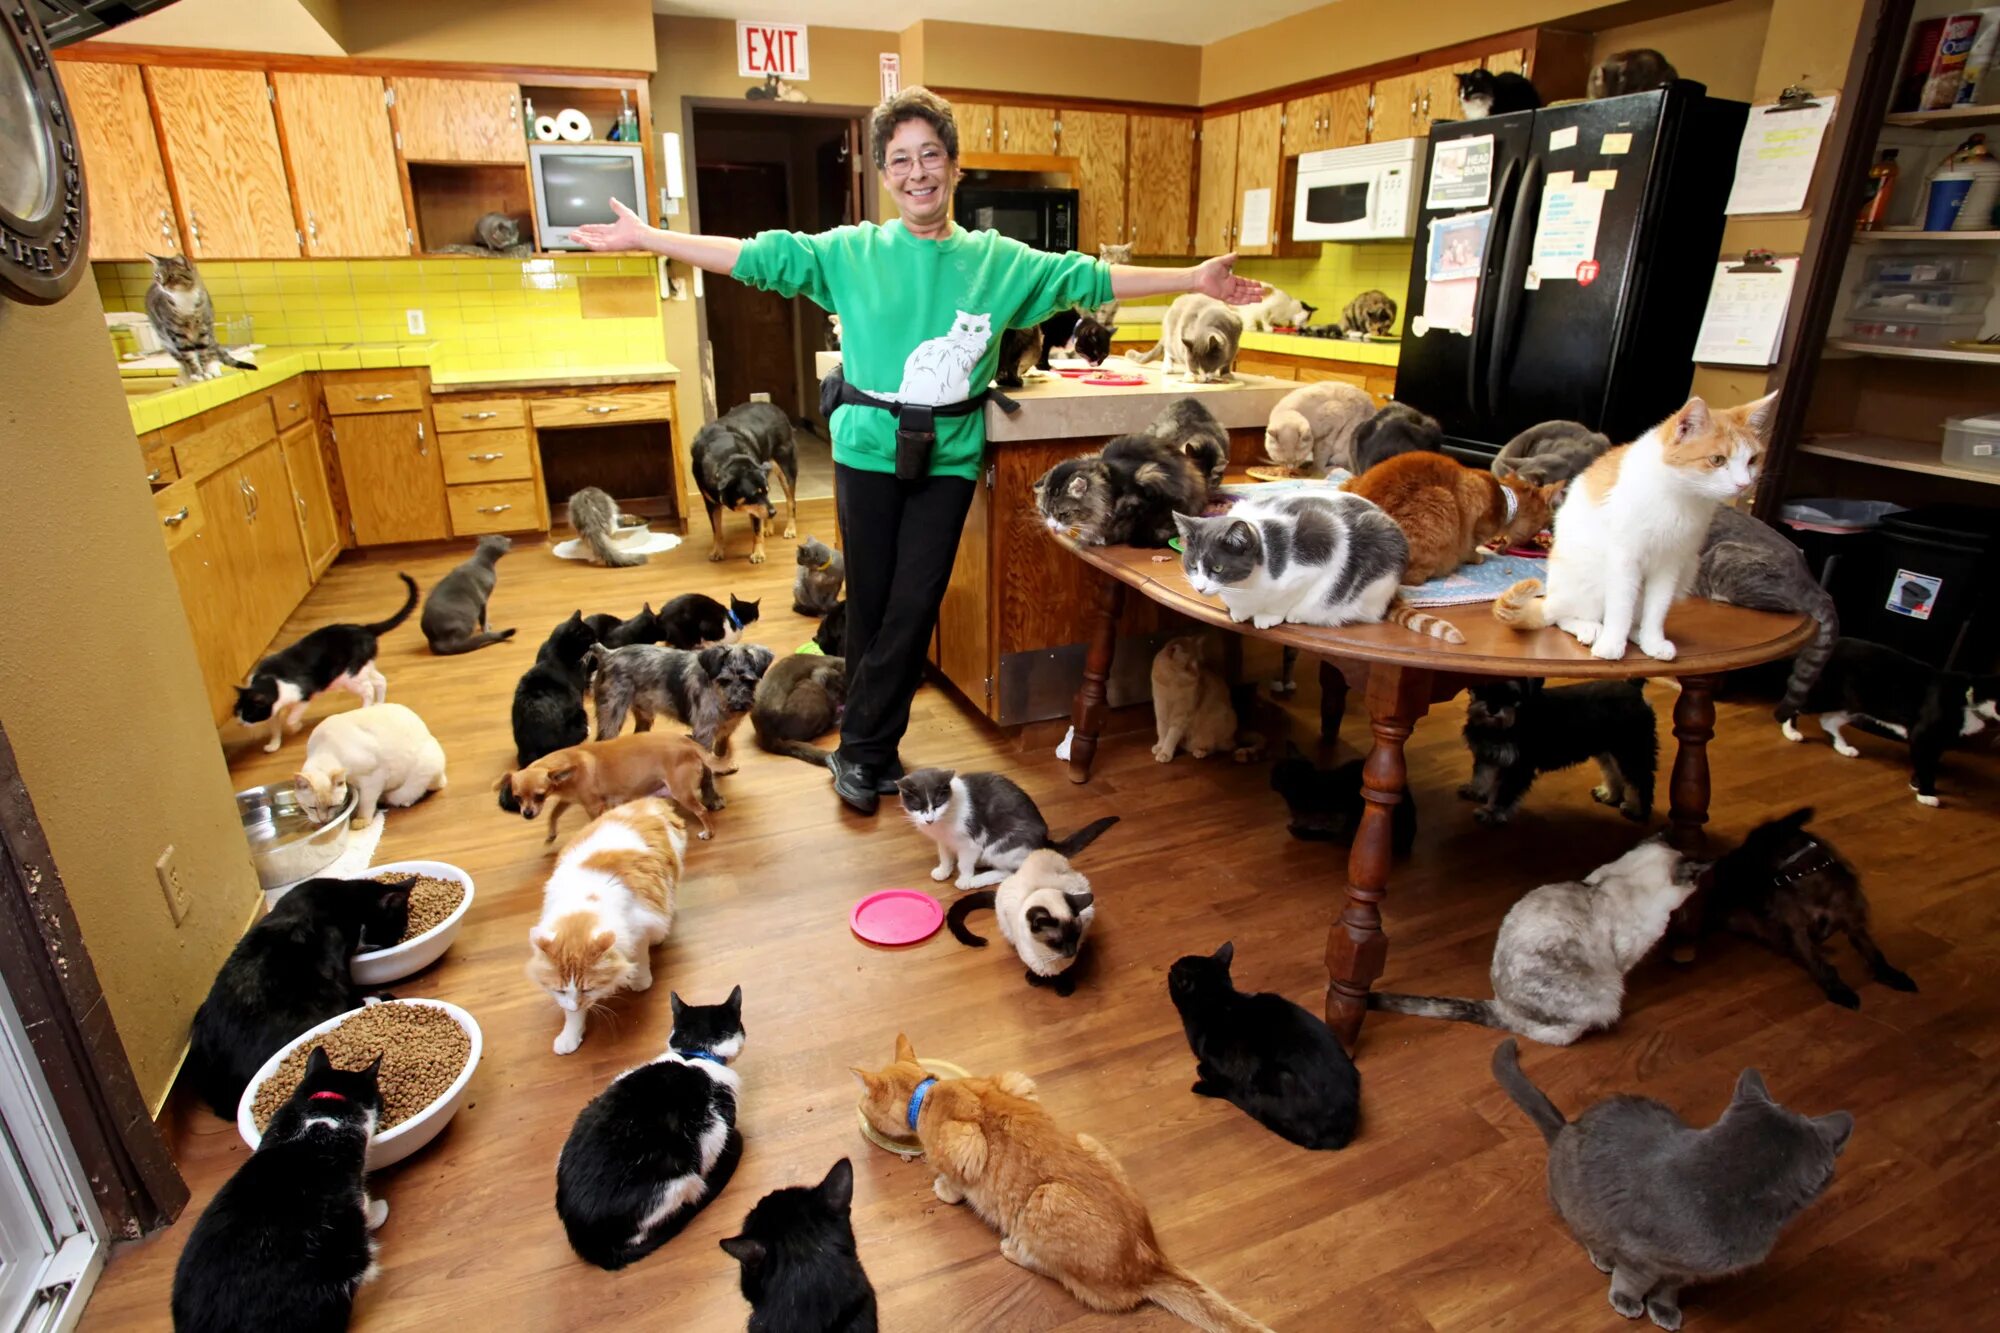 Играть много кошек. Домашние животные в доме. Куча кошек в квартире. Домашиеживотные в квартире. Много животных в квартире.